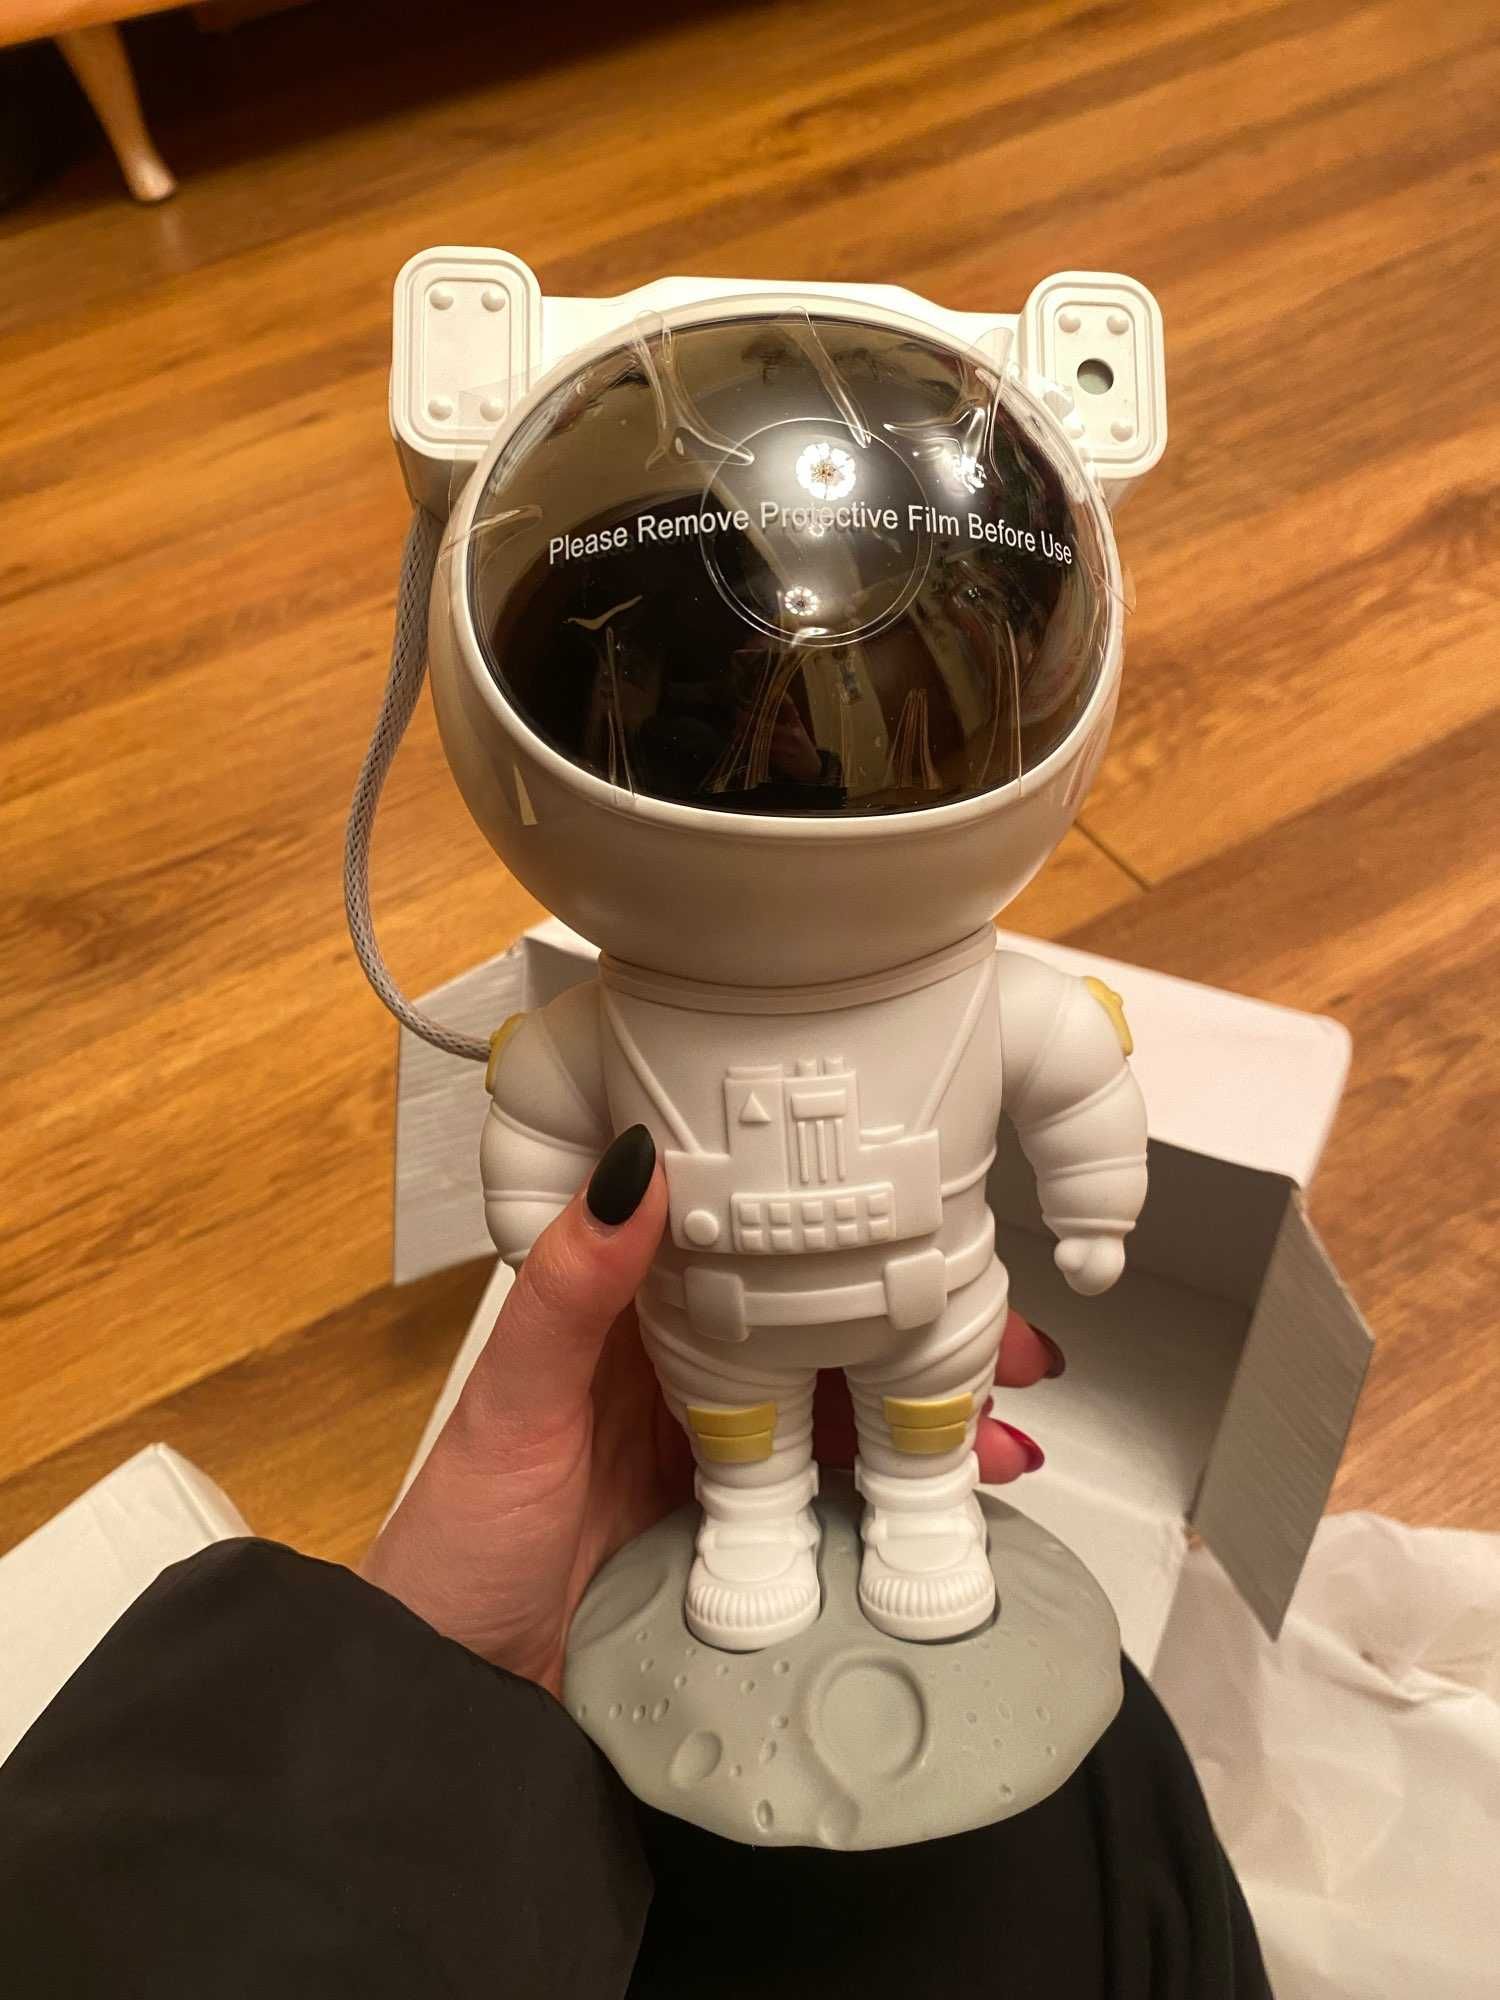 Космонавт звездное небо, ночное небо, подарок на новый год для детей